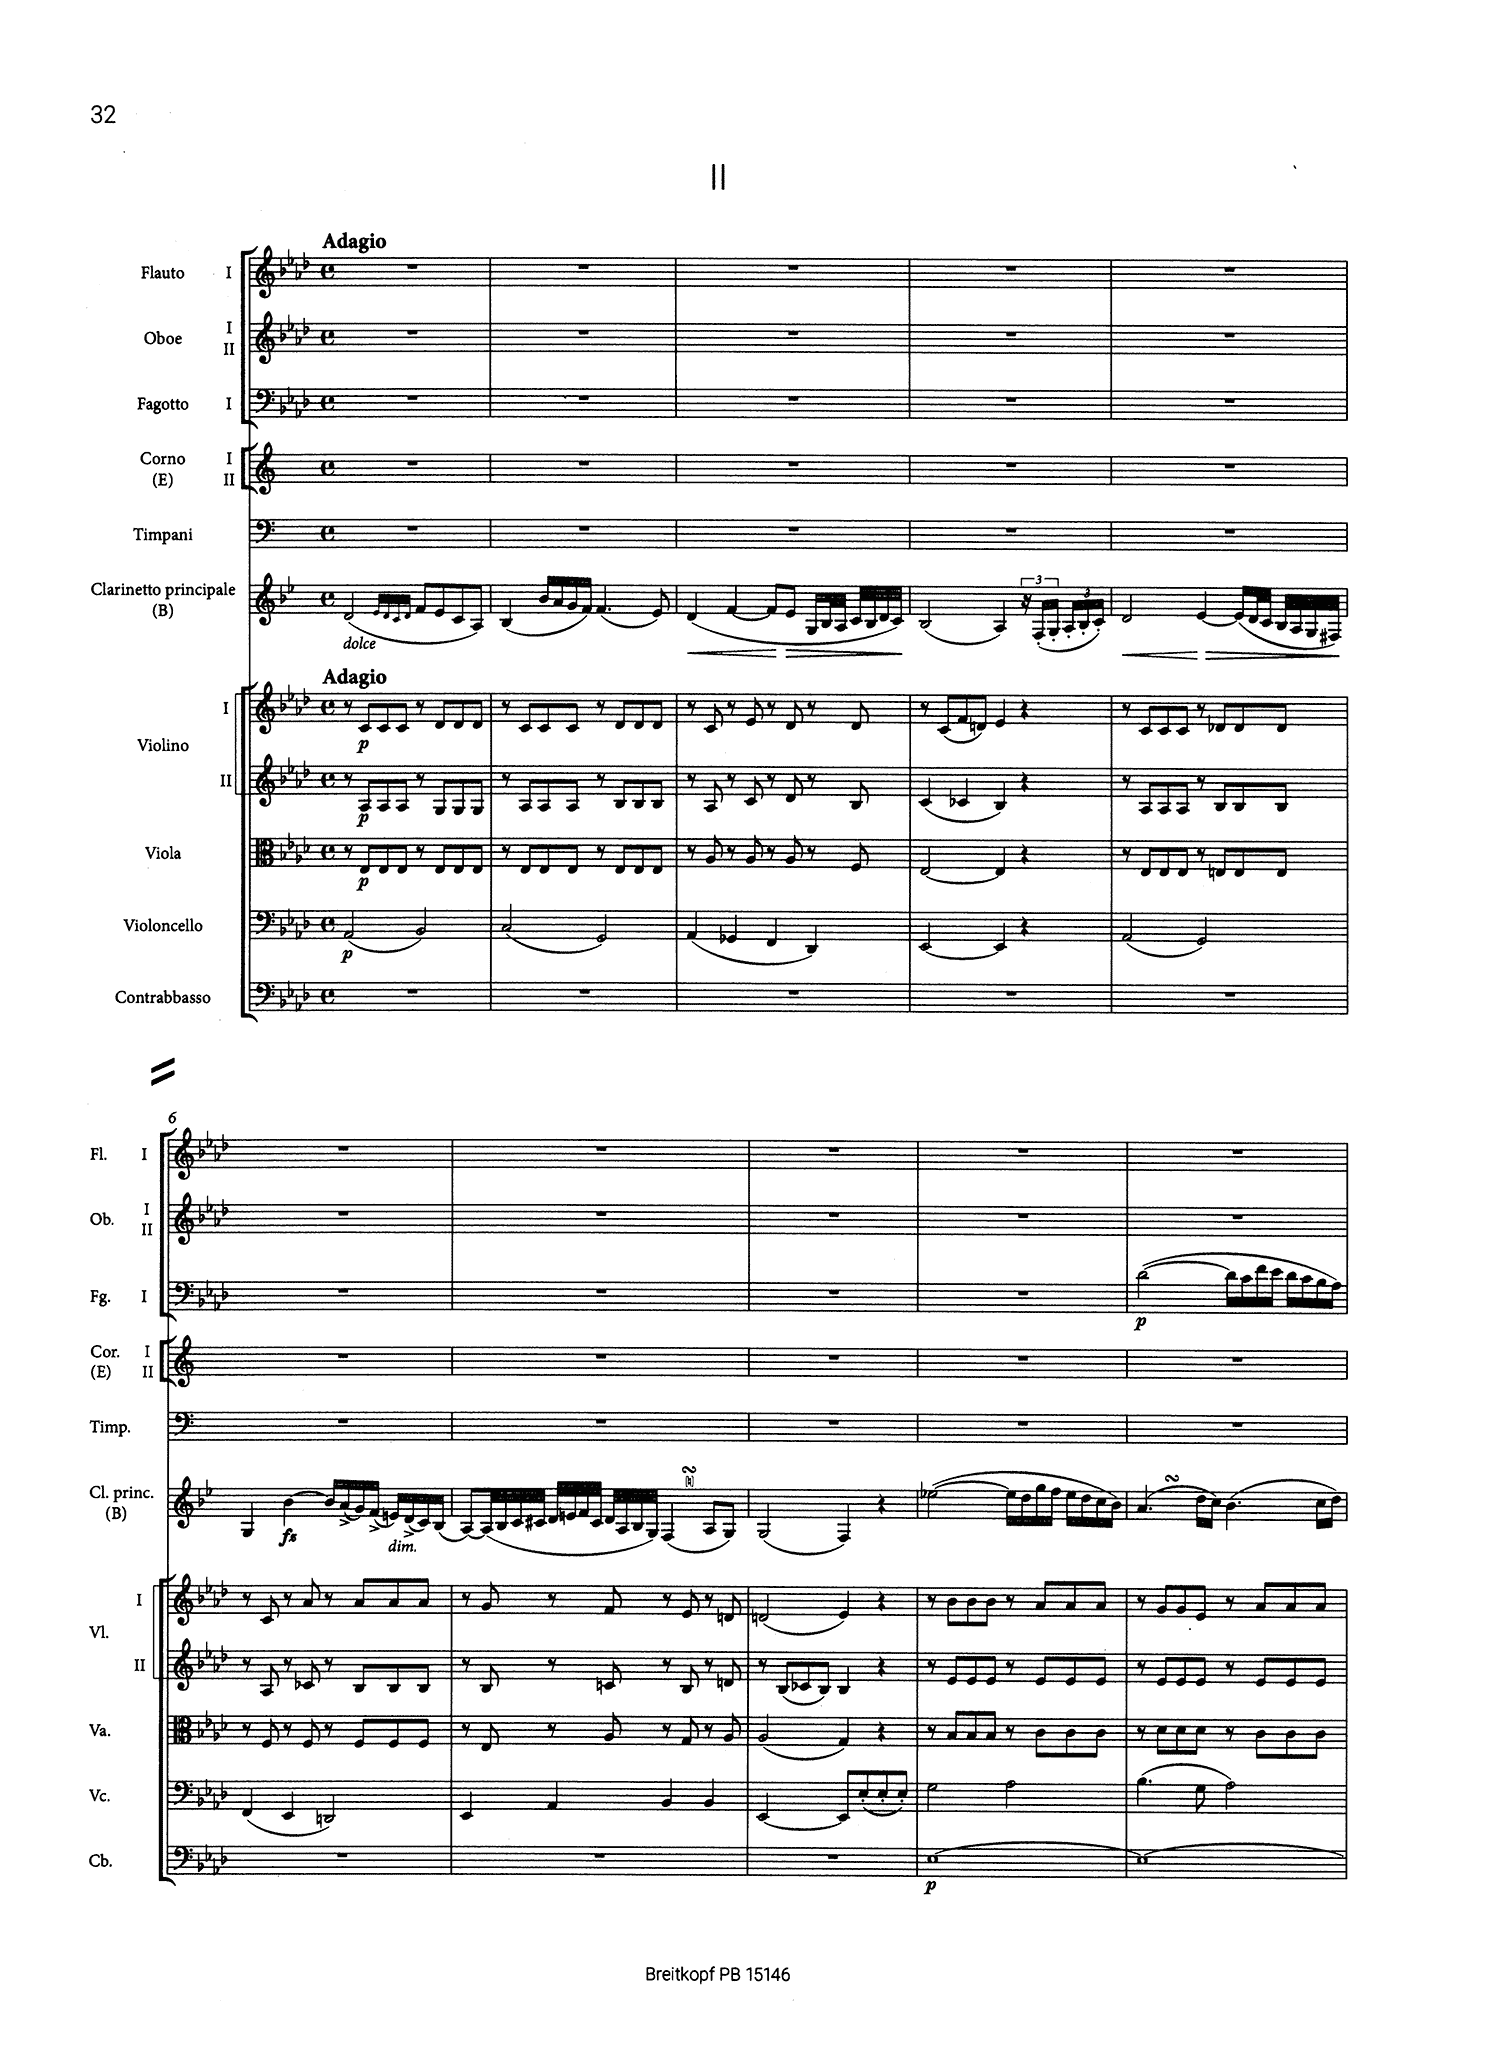 Spohr Clarinet Concerto No. 2 in E-flat Major, Op. 57 mini score - Movement 2